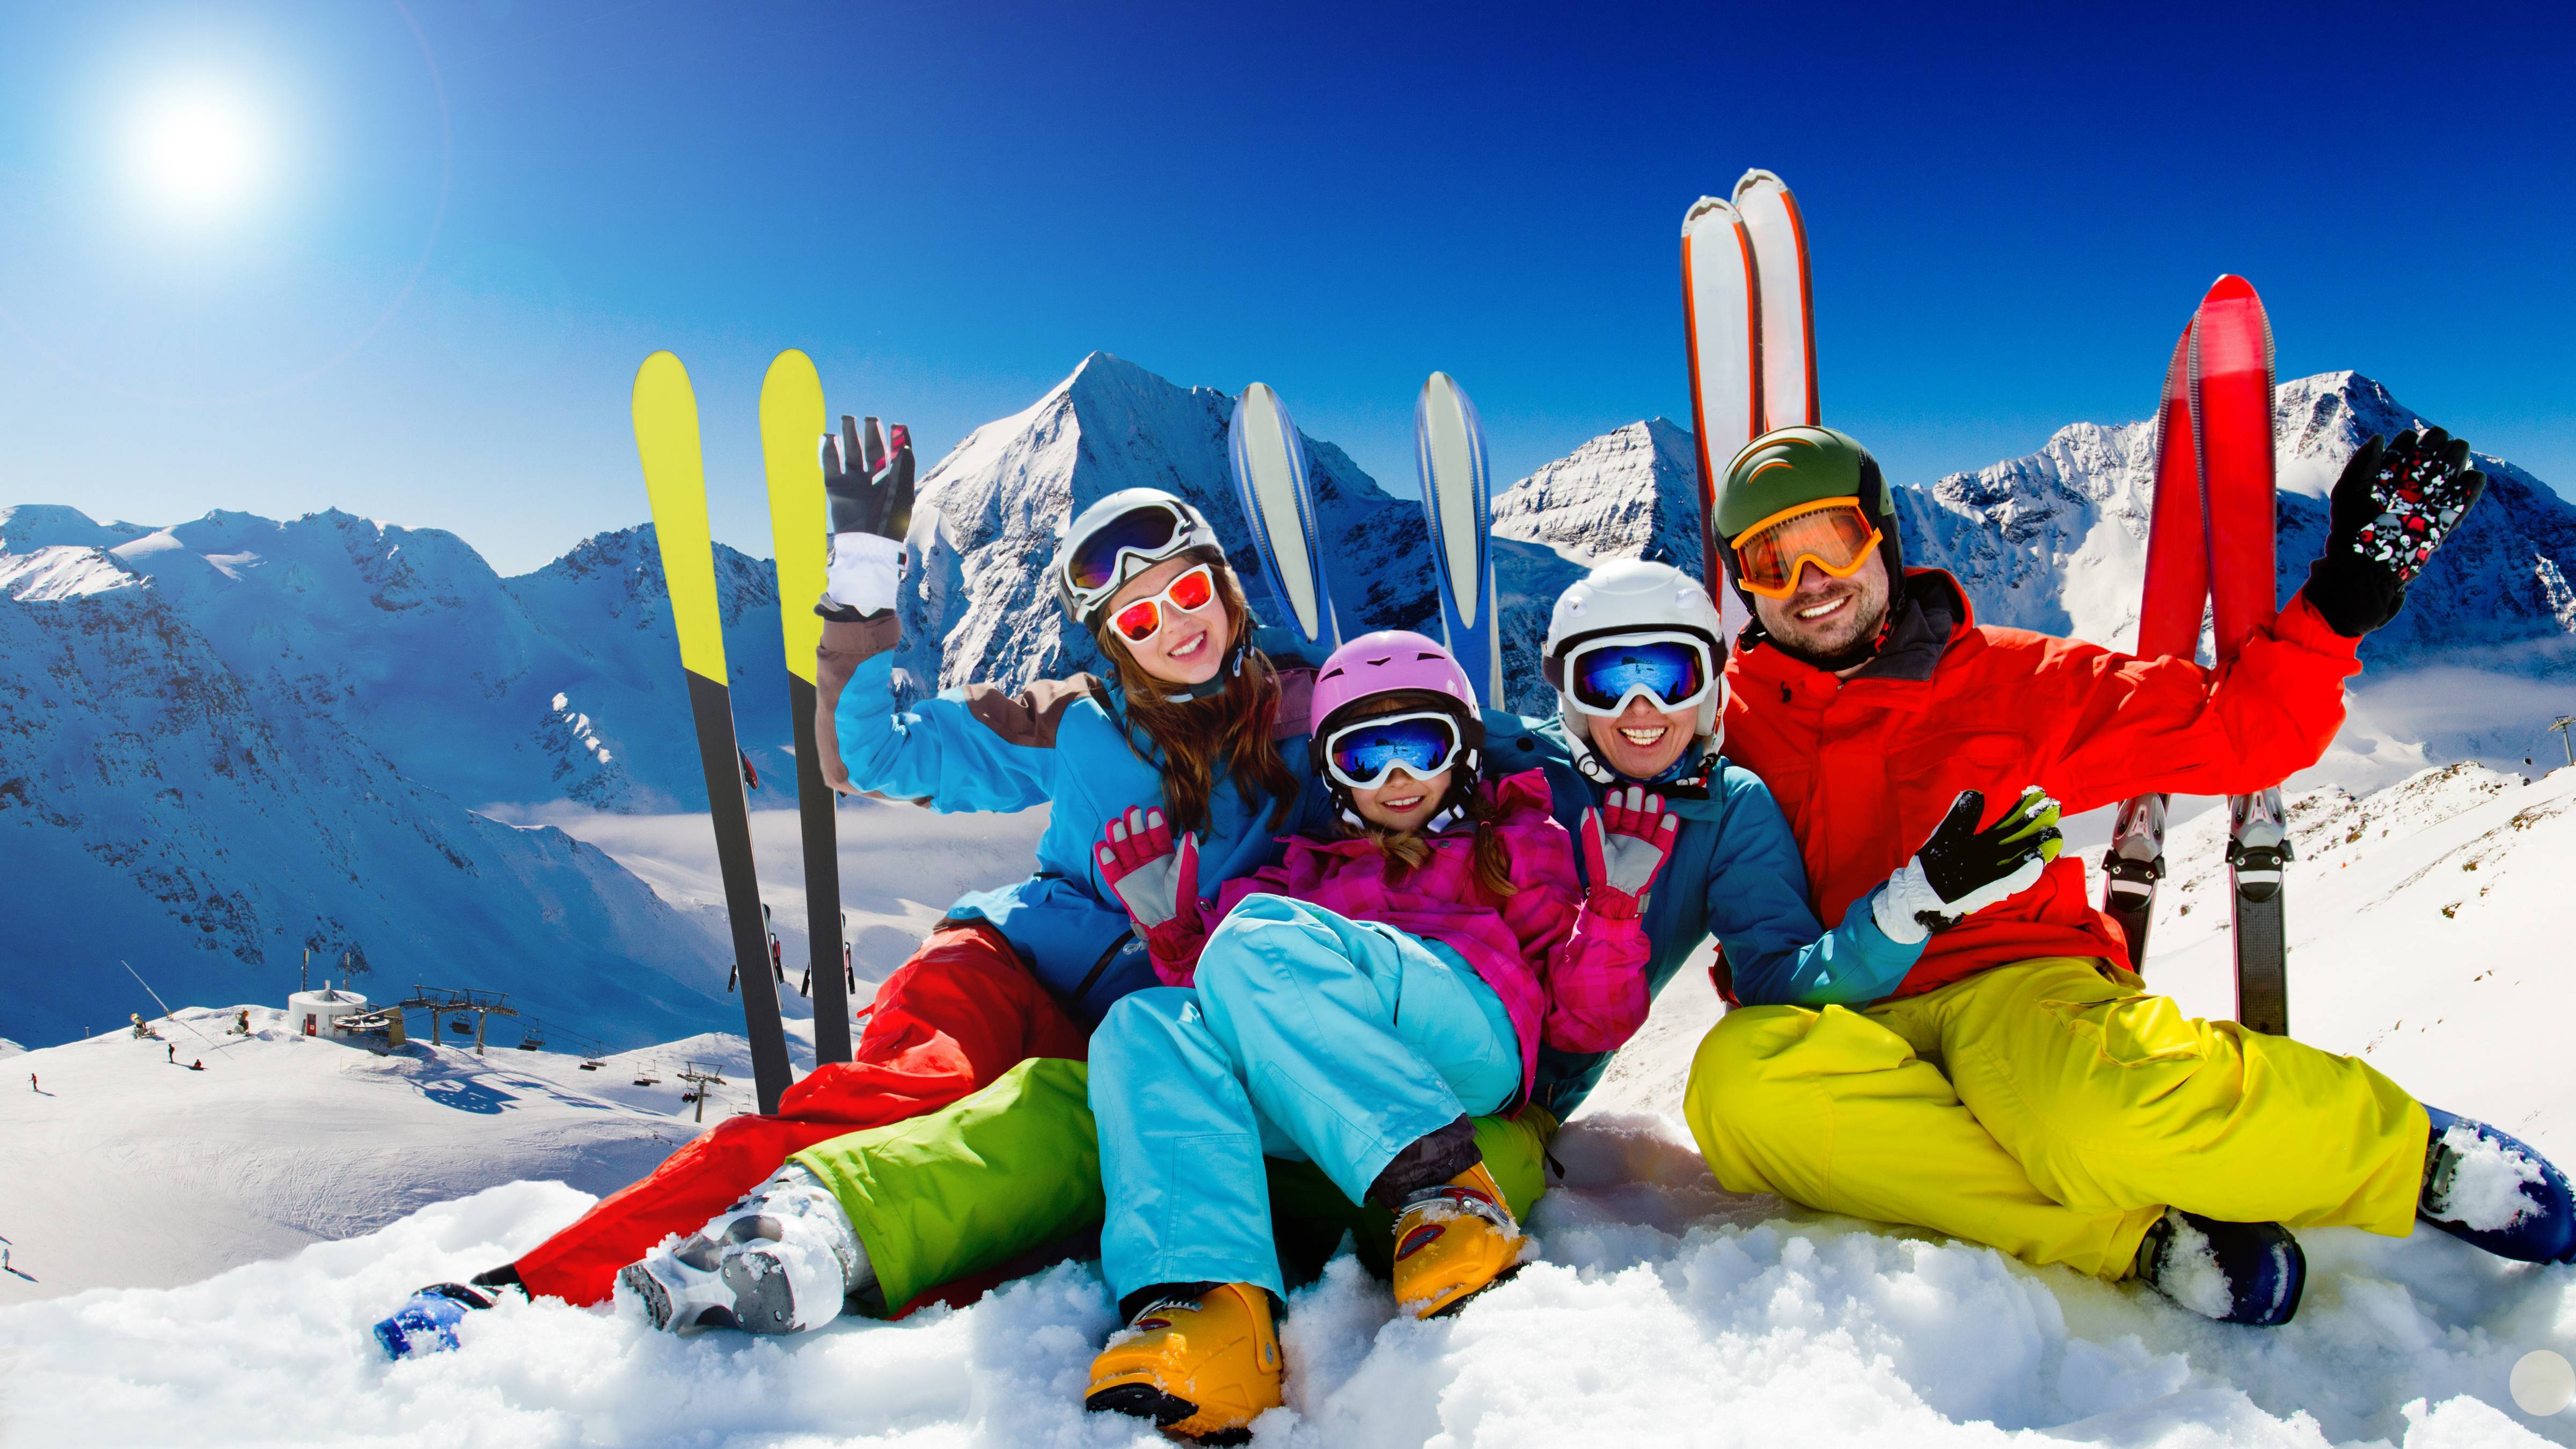 Компания горнолыжный курорт. Семья на горных лыжах. Горнолыжный спорт. Семья катается на лыжах в горах. Зимний курорт.